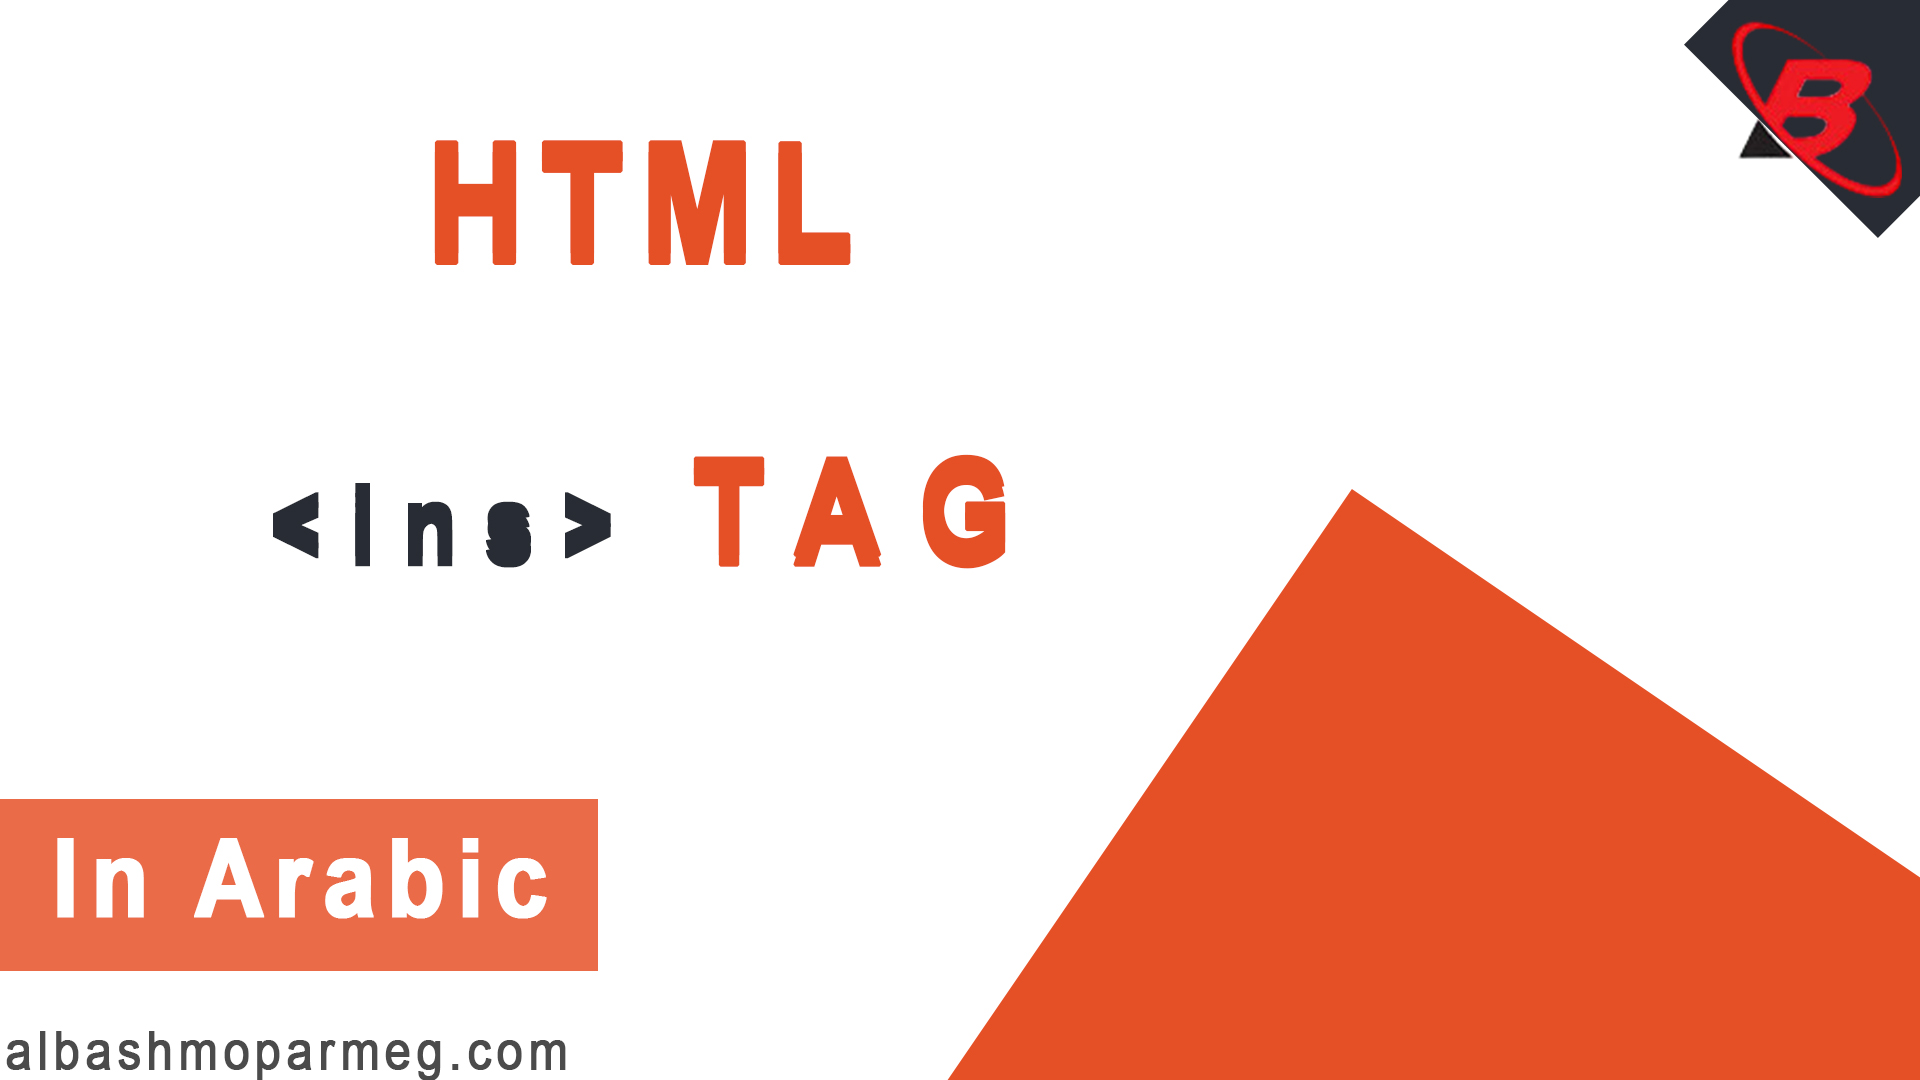 HTML ins Tag - الباشمبرمج